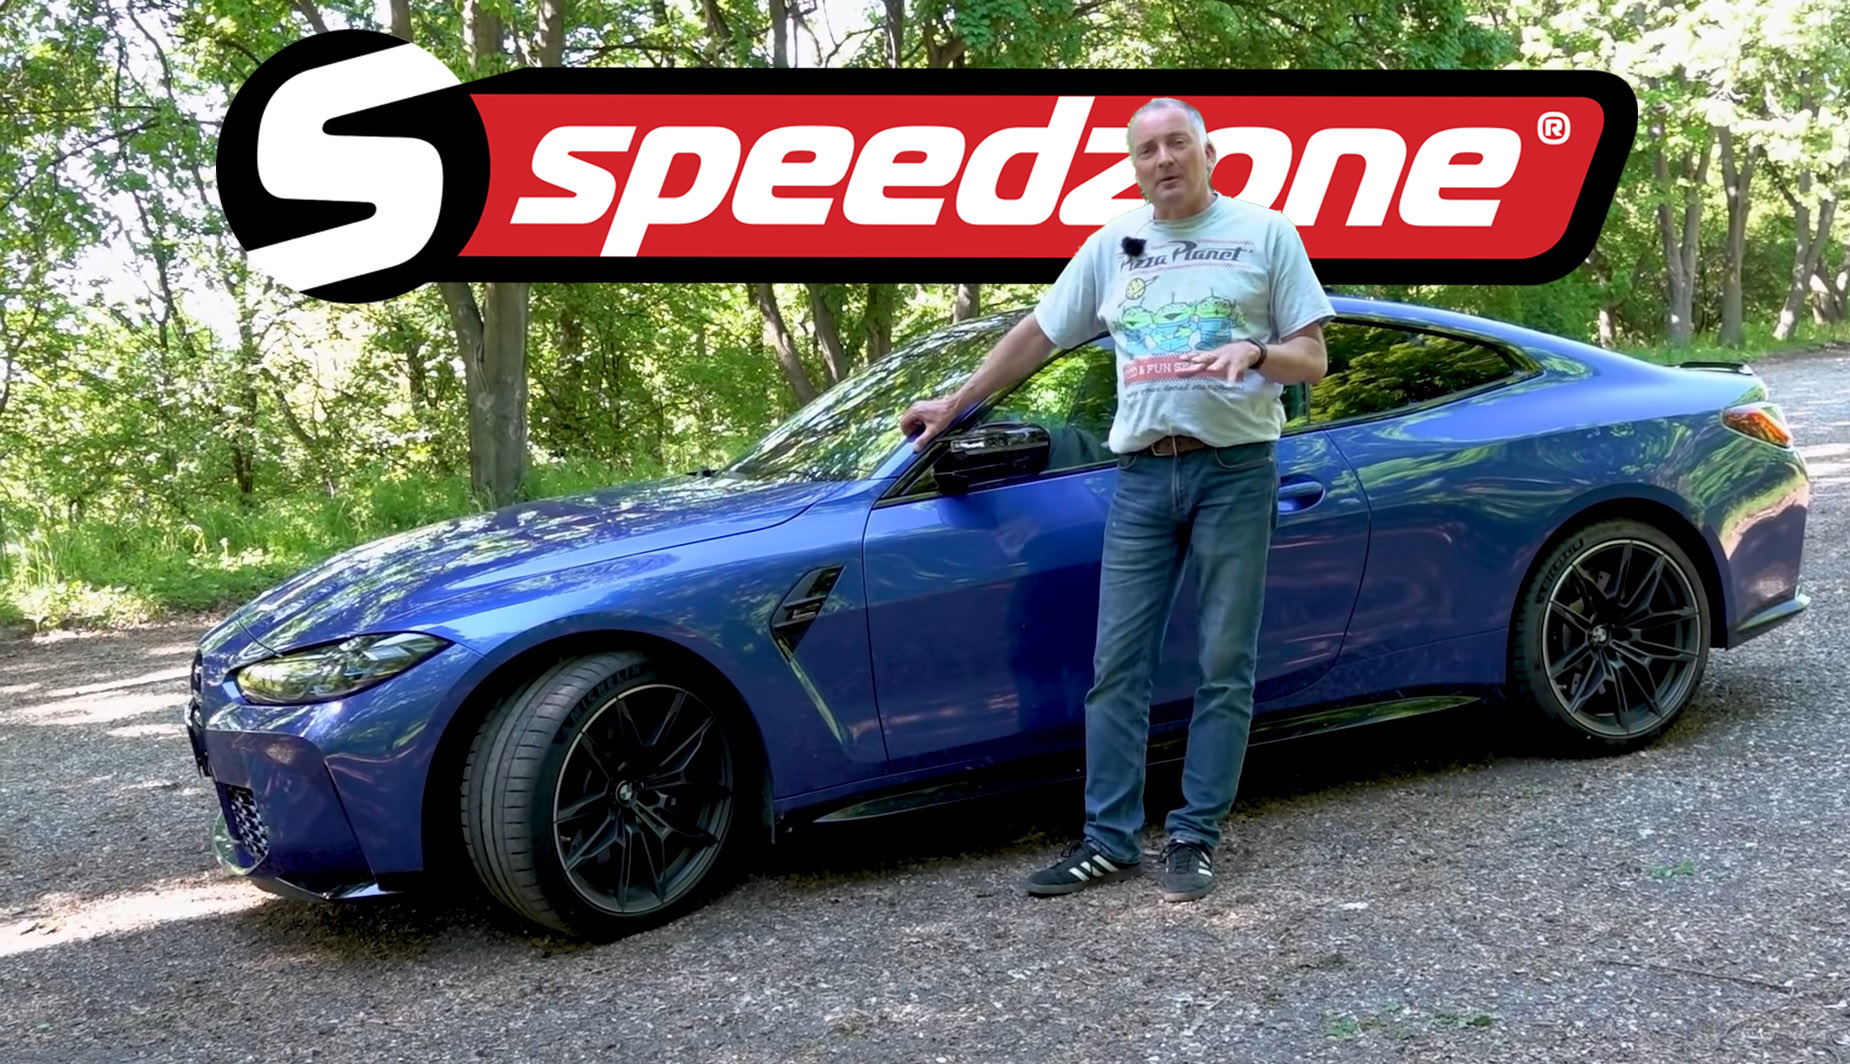 Speedzone: ezzel a csomaggal még erősebb a BMW M4-es, de vajon érződik is  rajta? Kipróbáltuk! - Blikk